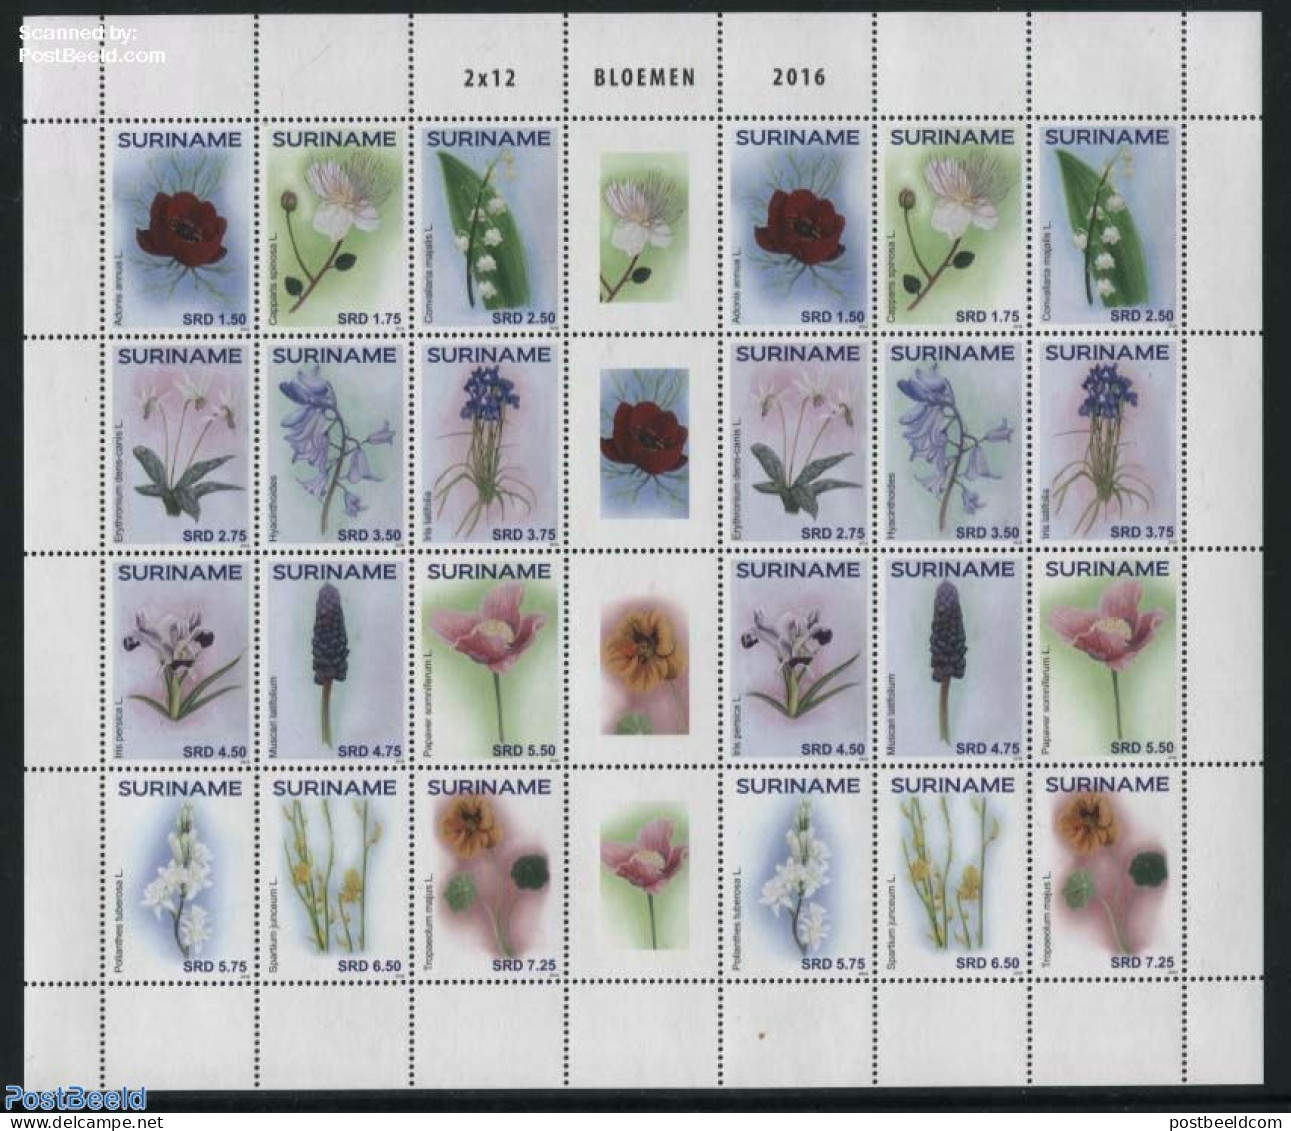 Suriname, Republic 2016 Flowers M/s, Mint NH, Nature - Flowers & Plants - Surinam